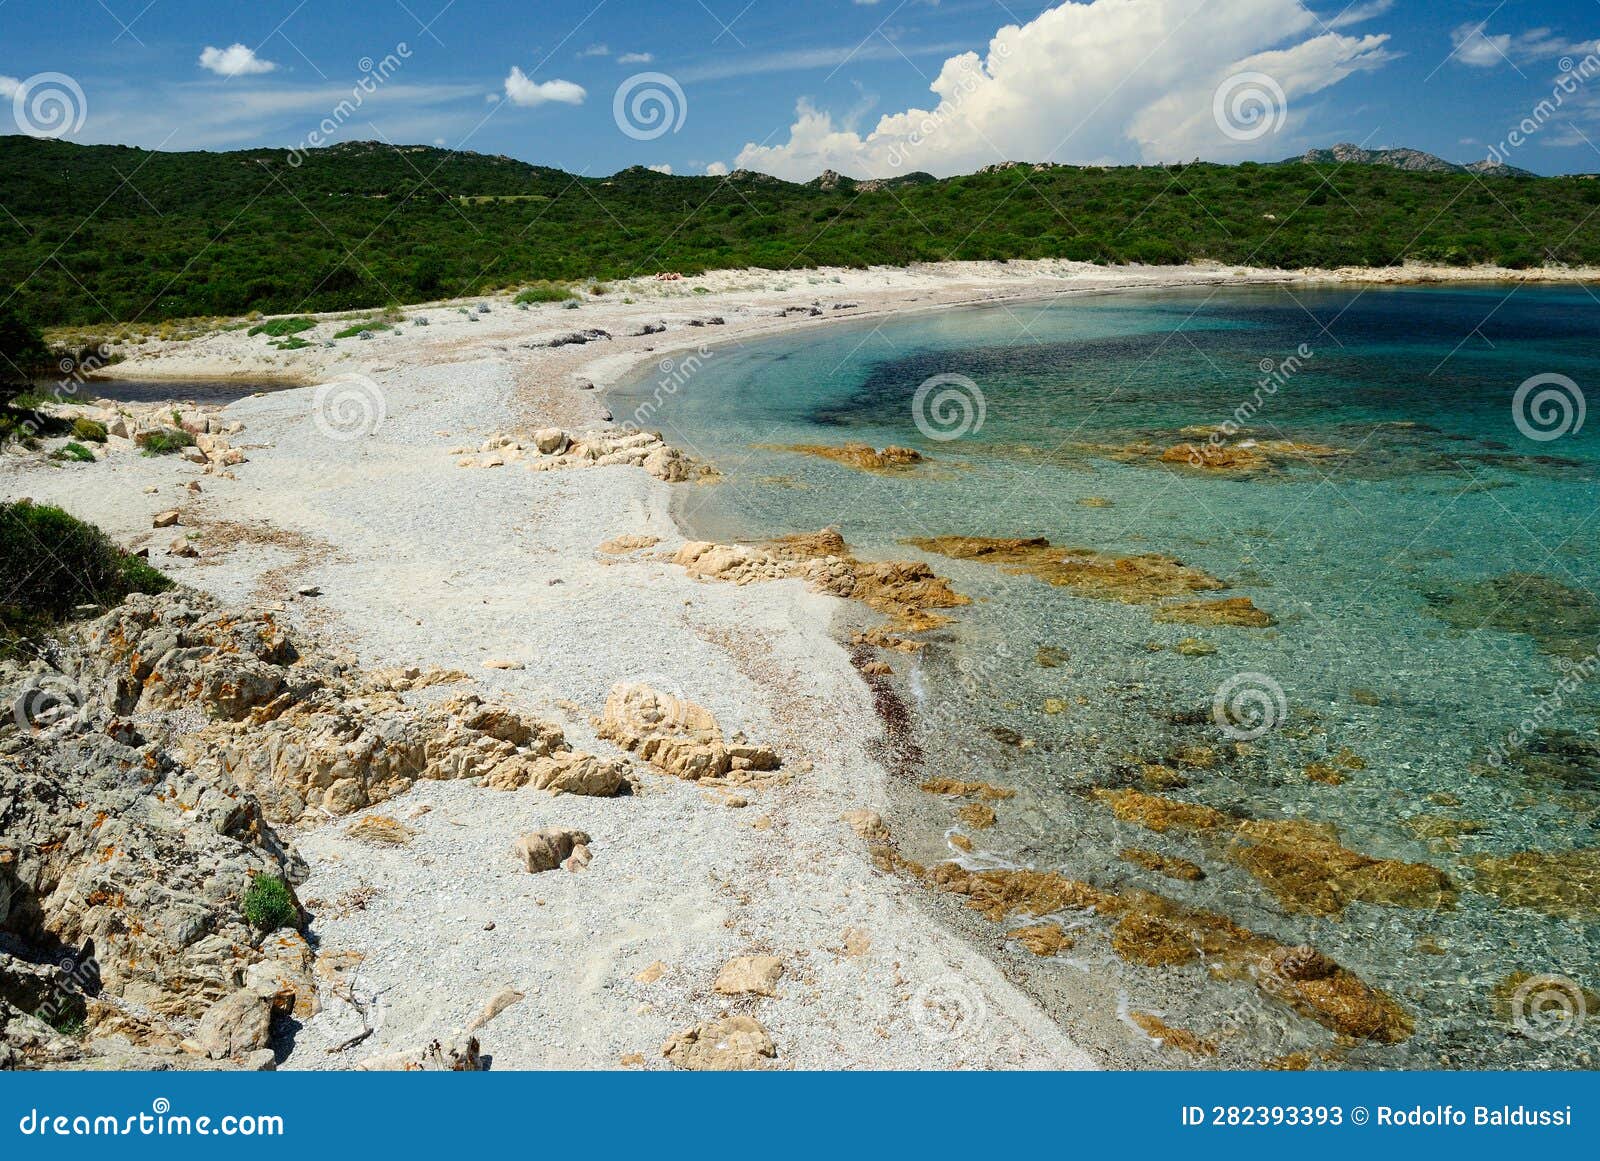 the beach of razza di junco in costa smeralda